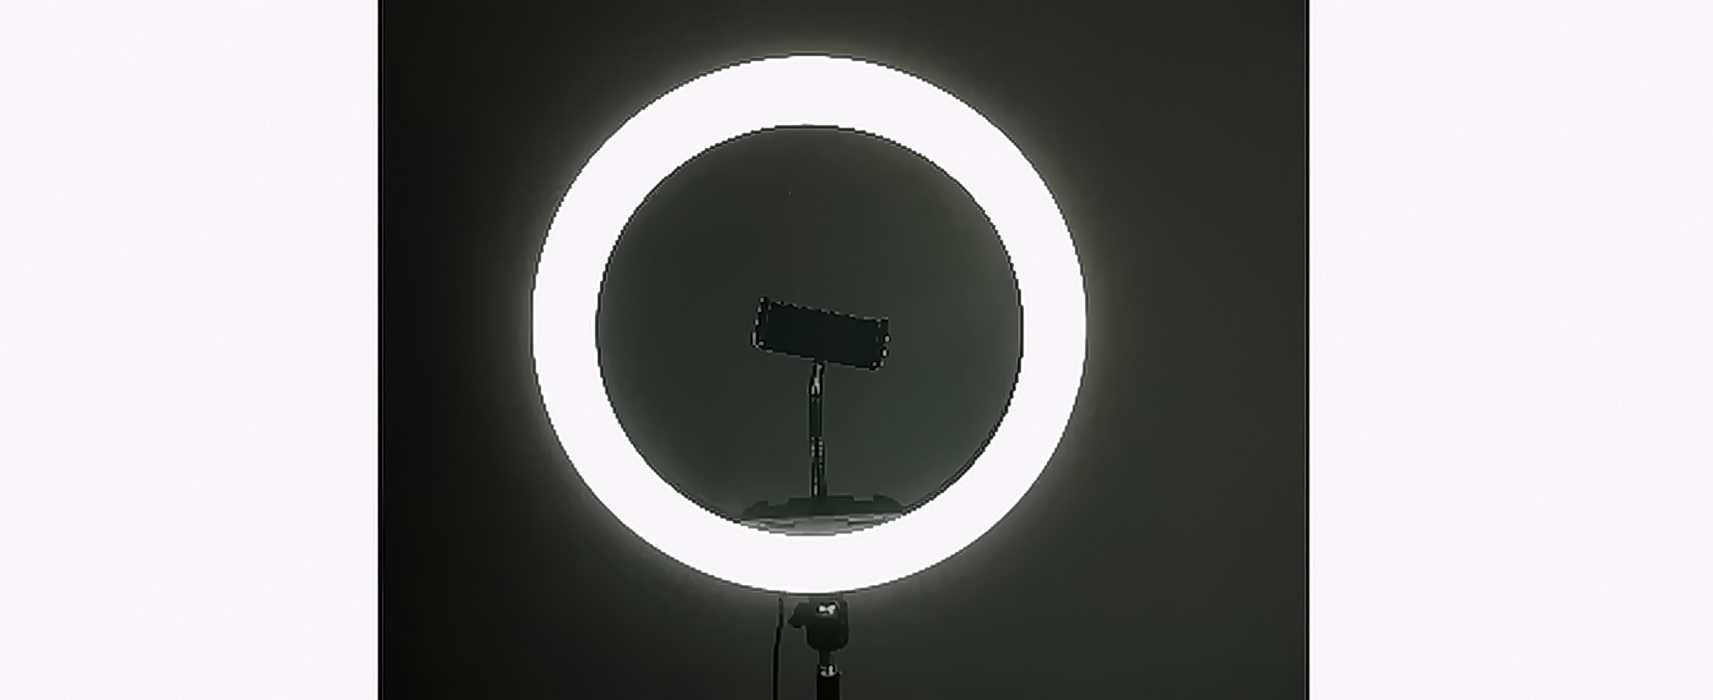 Кольцевая лампа, диаметр 26 см, для фото, видео, 27 Вт, штатив 2м